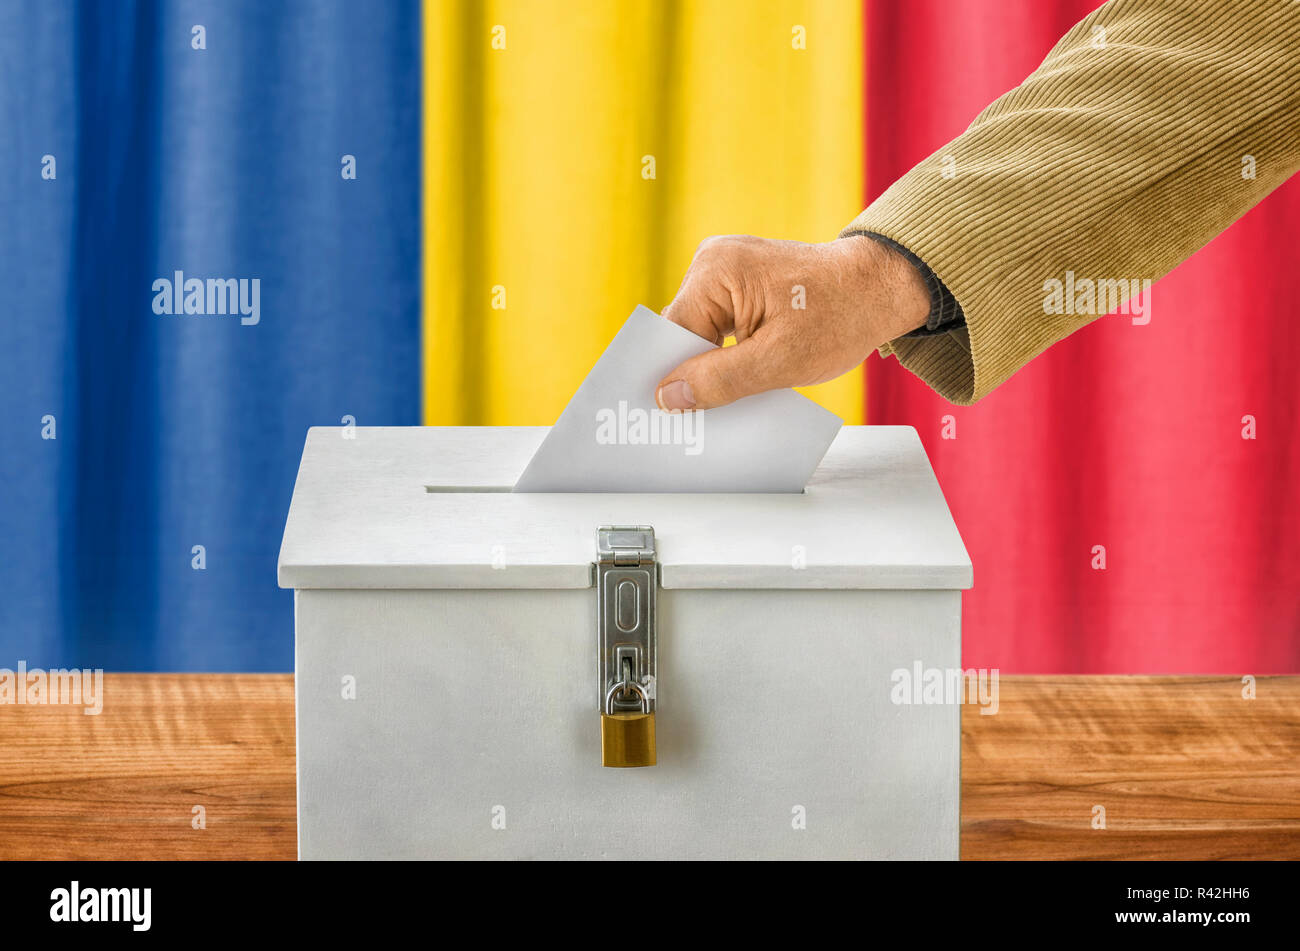 Mann wirft Stimmzettel in Urne - Rumänien Stockfoto